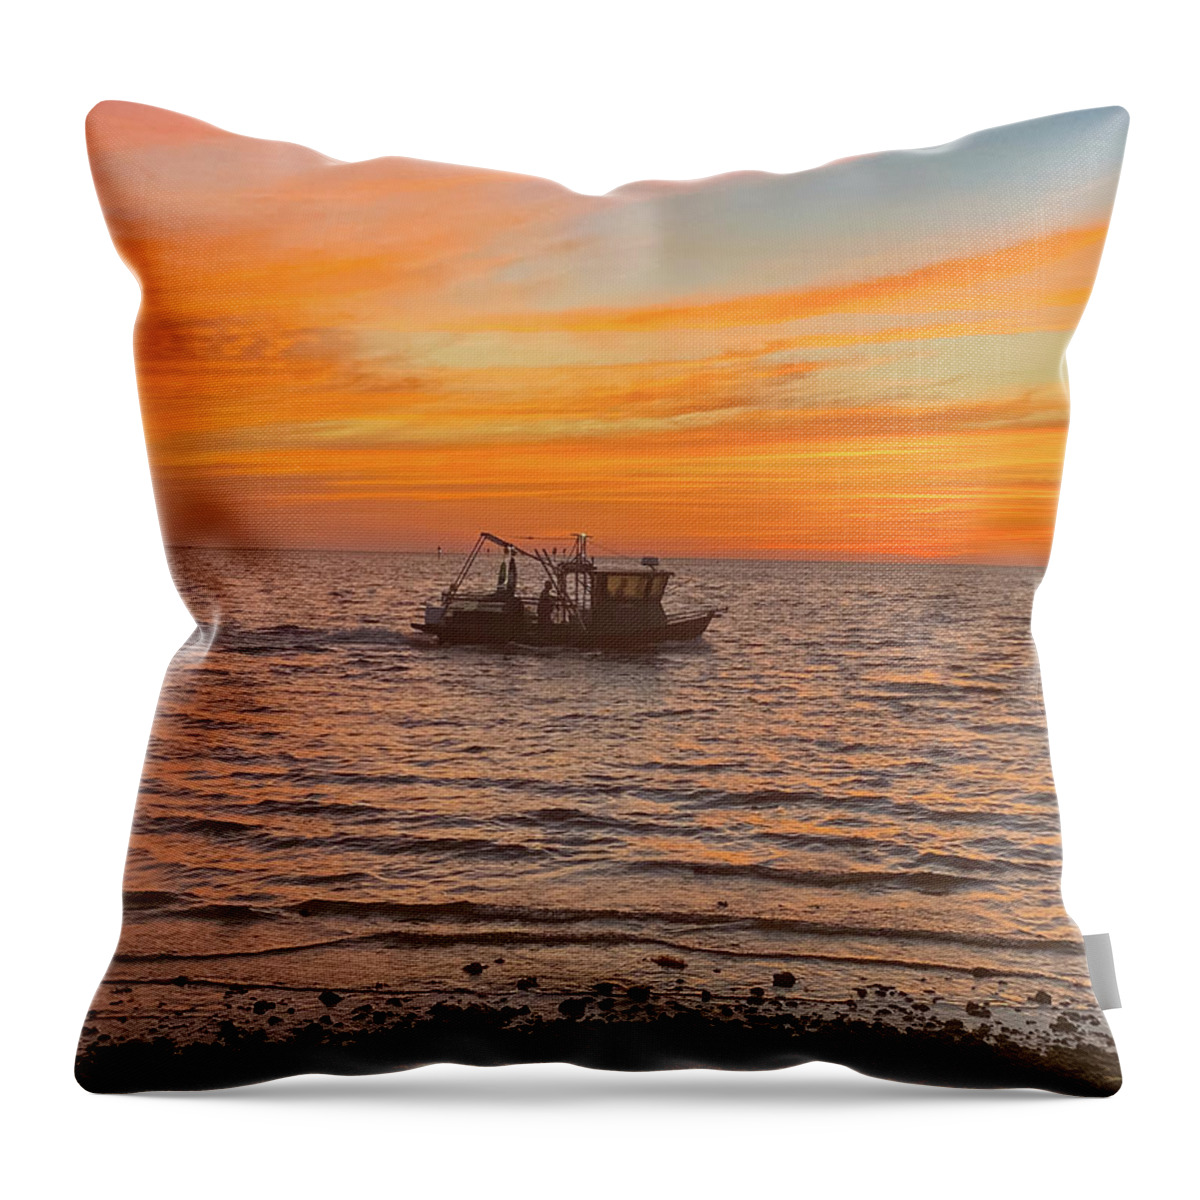 Hudson Beach Throw Pillow featuring the photograph Hudson Beach Sunset by Rick Redman